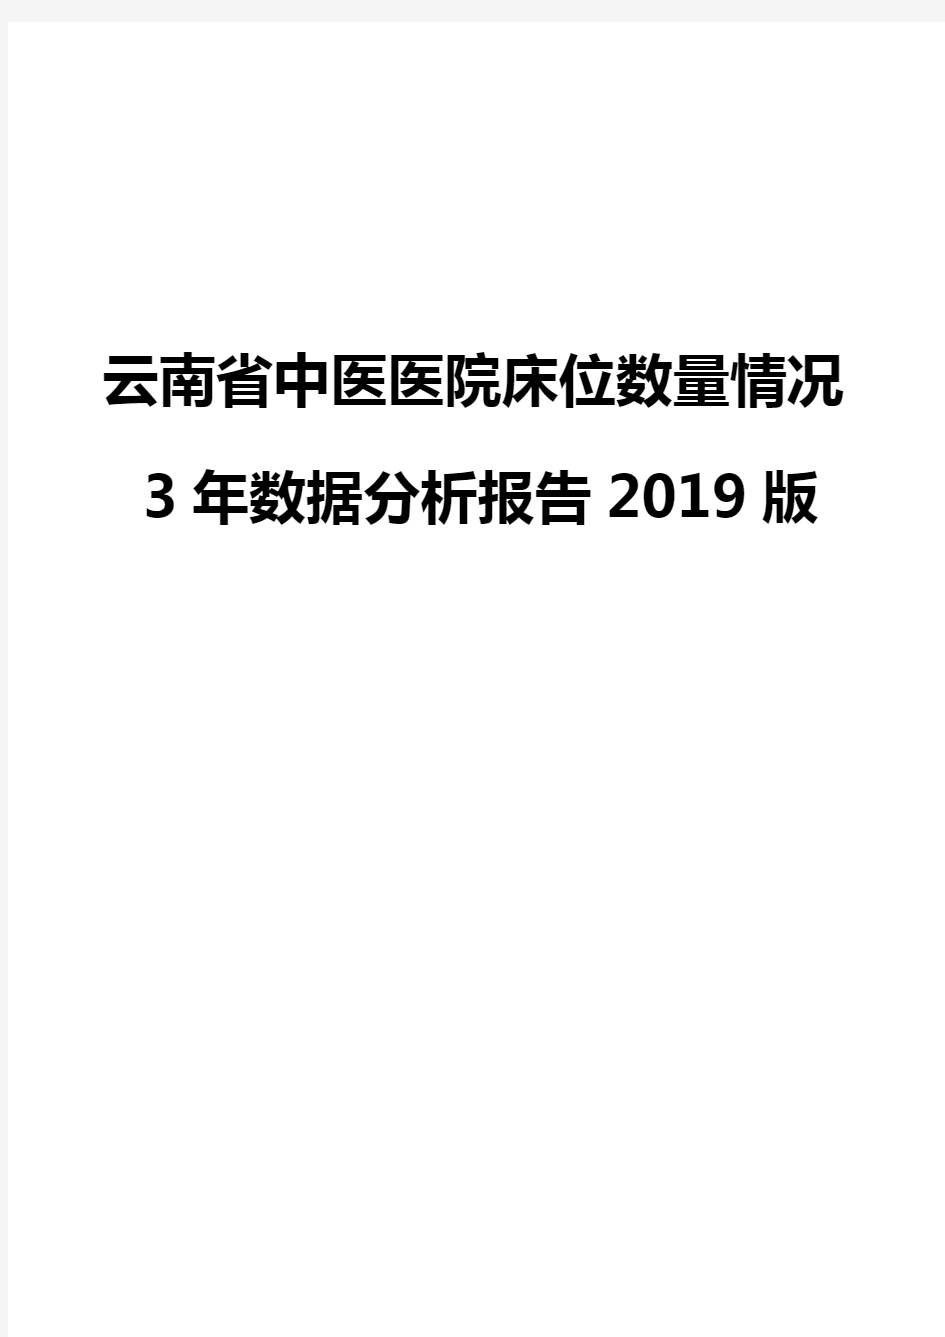 云南省中医医院床位数量情况3年数据分析报告2019版